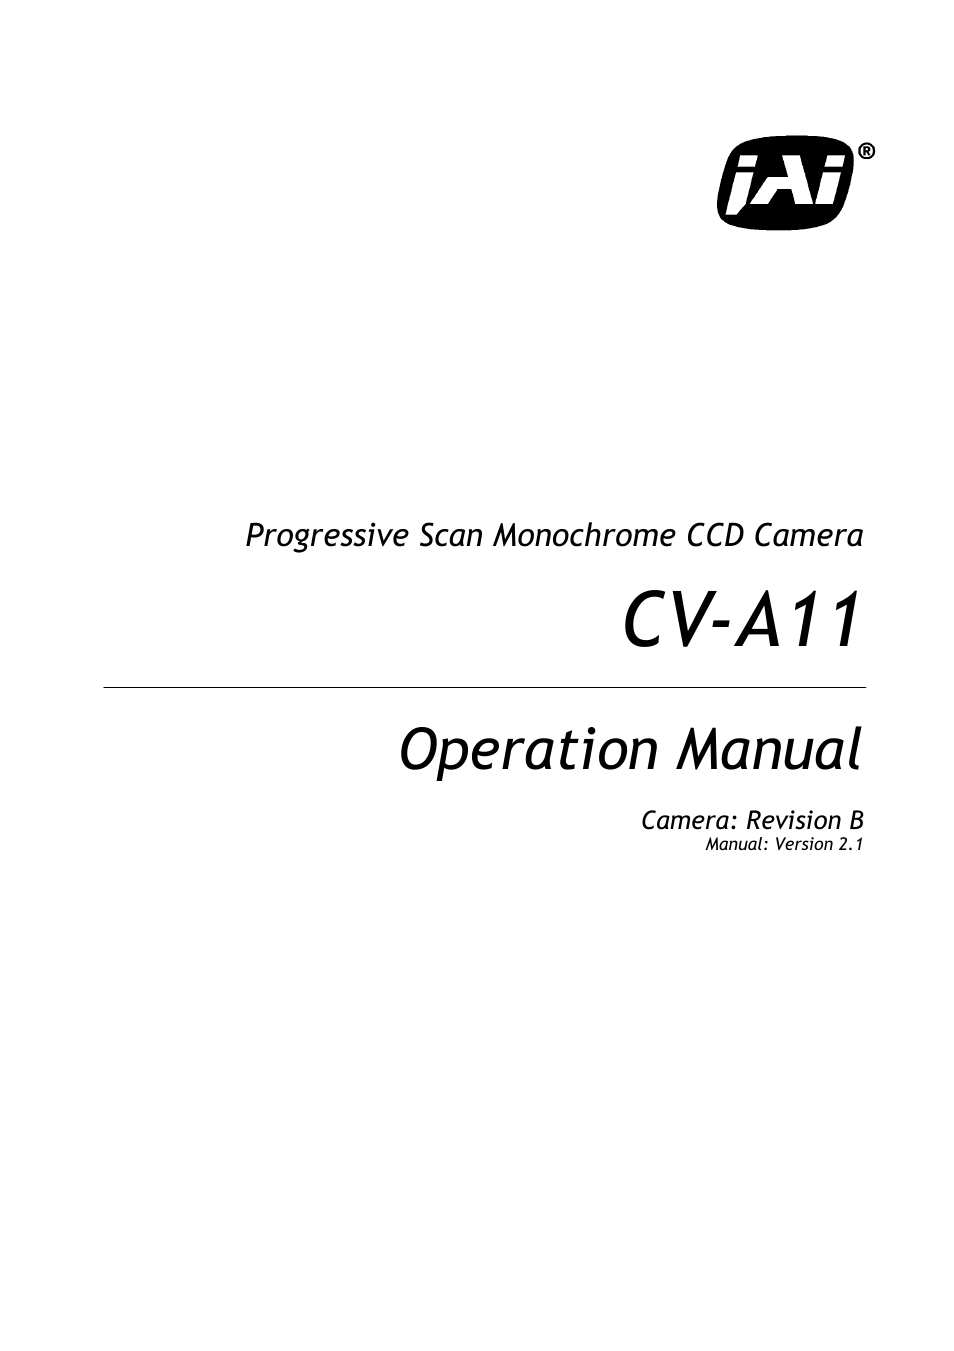 CV-A11